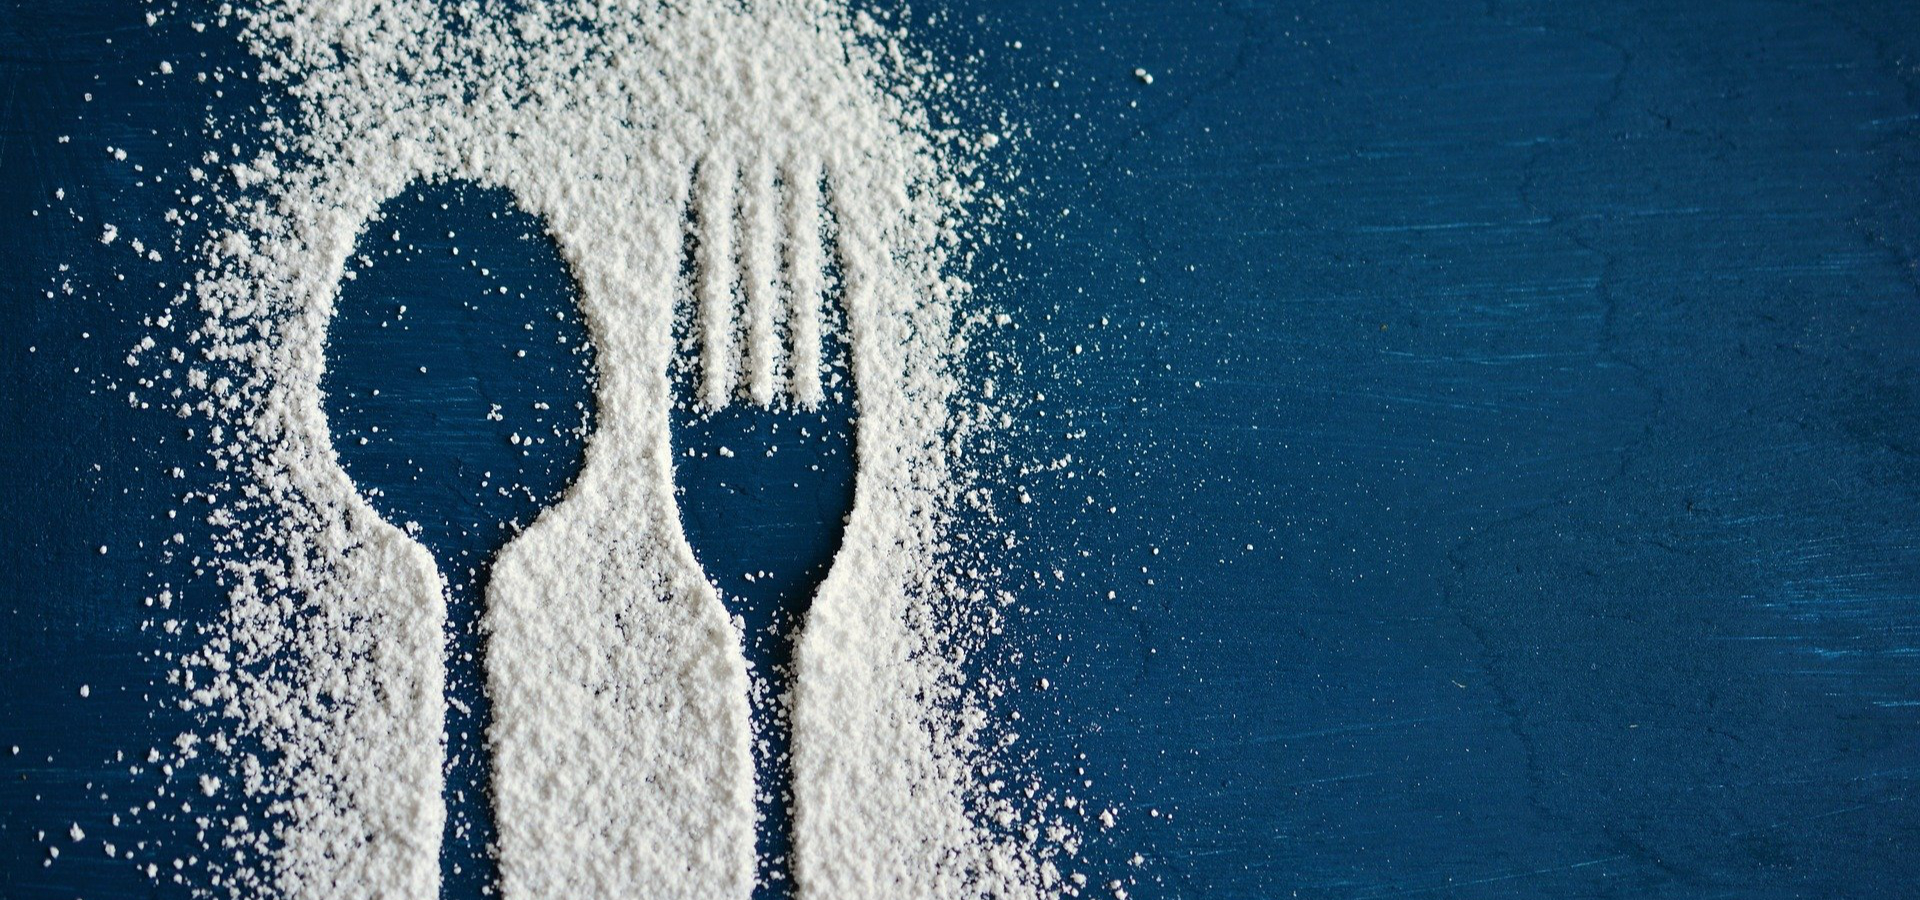 Crianças e adolescentes portugueses apresentam um elevado consumo de açúcares